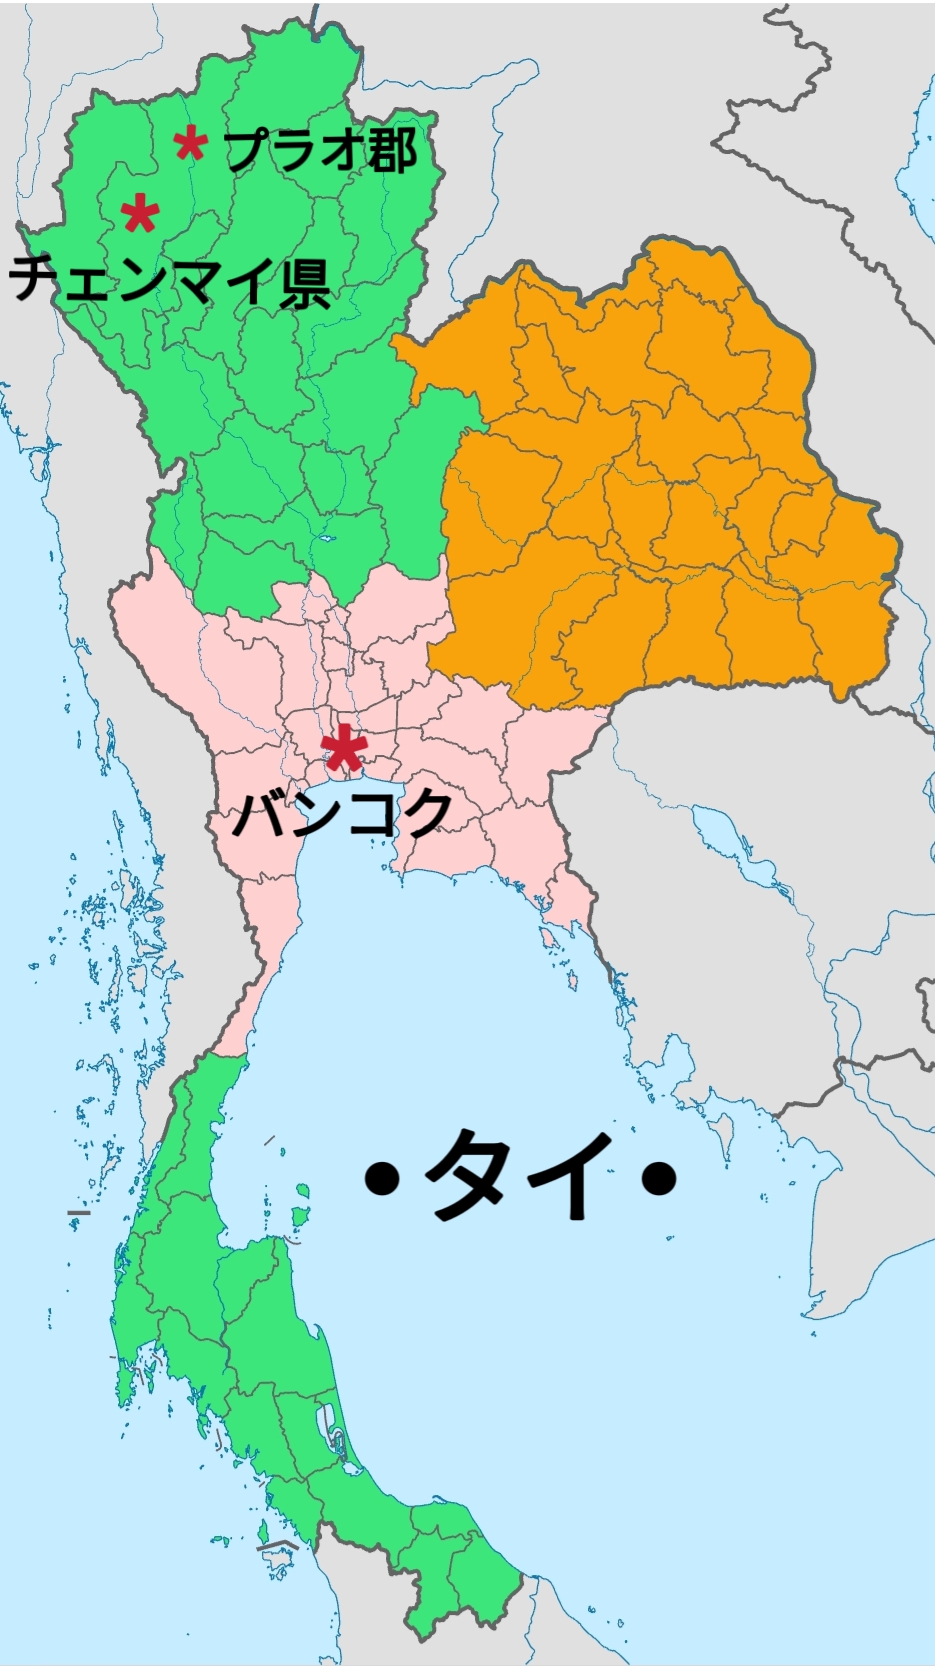 タイの地図の真ん中あたりにバンコク、左上にチェンマイ県、その県内の右上の部分にプラオ郡があります